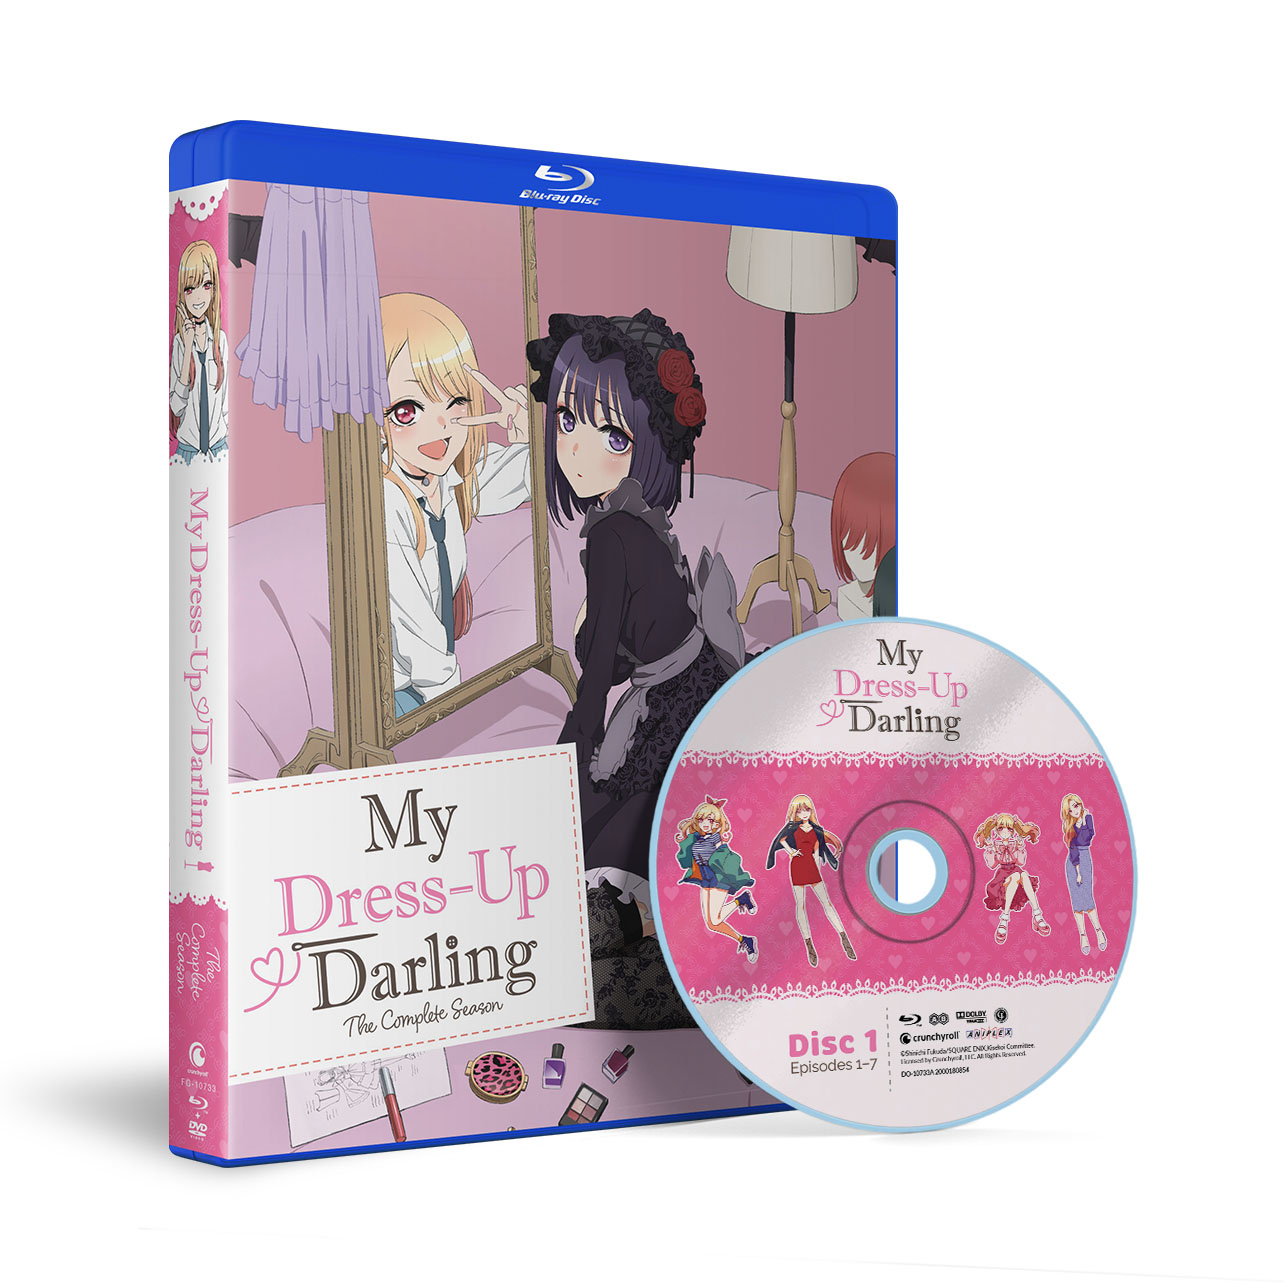 My Dress-Up Darling vende mais de 10 mil DVDs e Blu-Rays - Nerdizmo